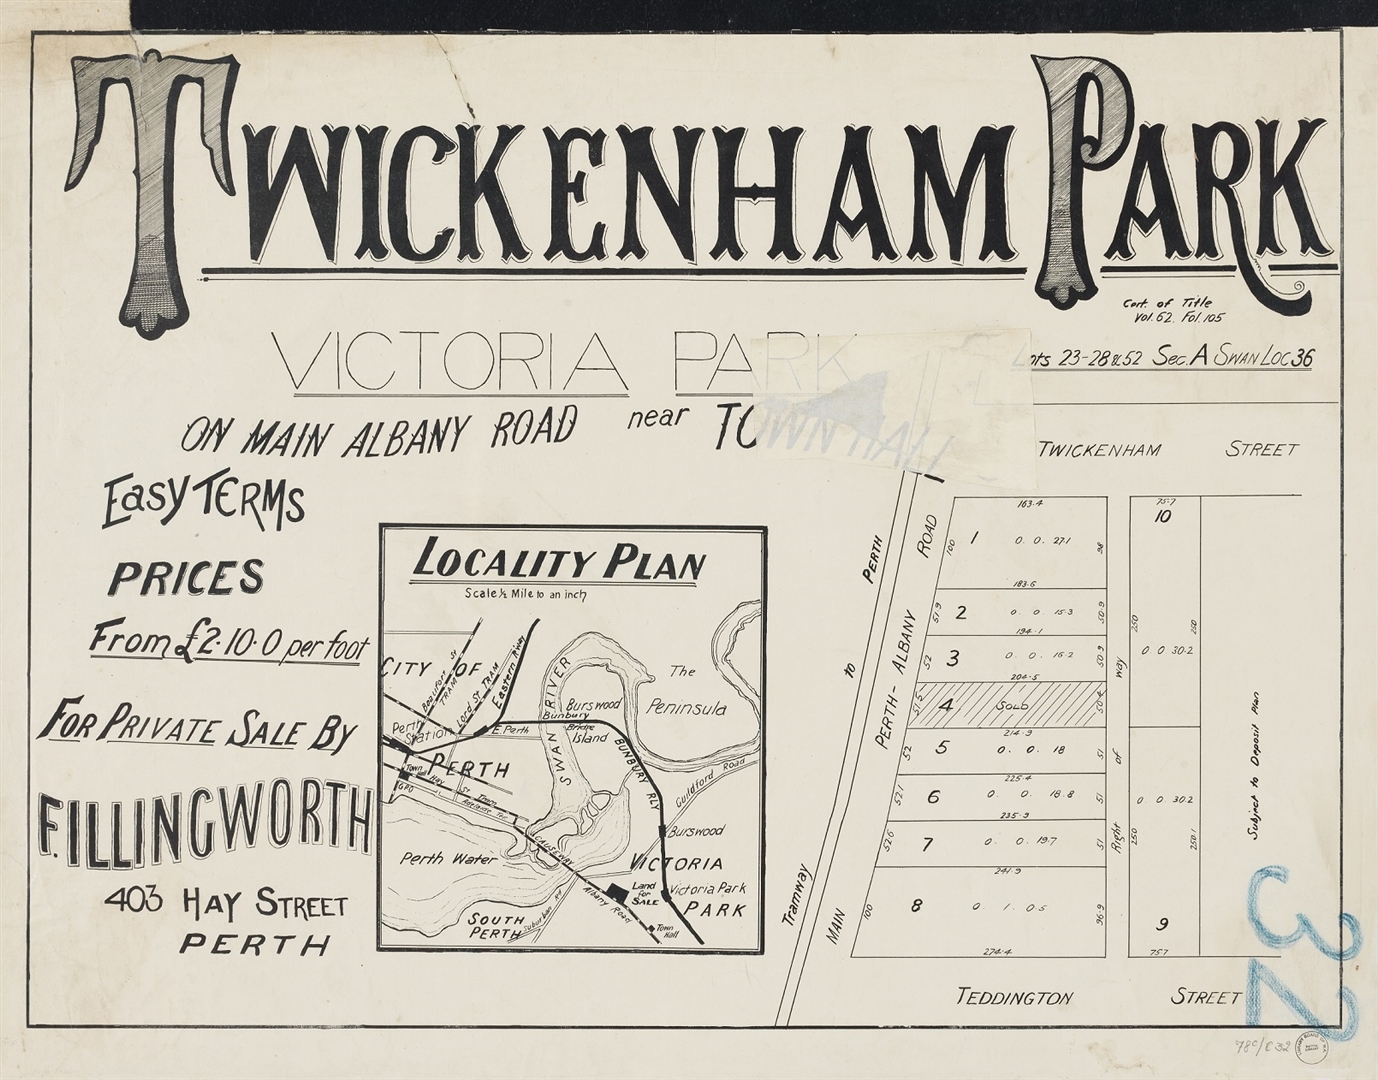 Twickenham Park, Victoria Park [1906?] Image